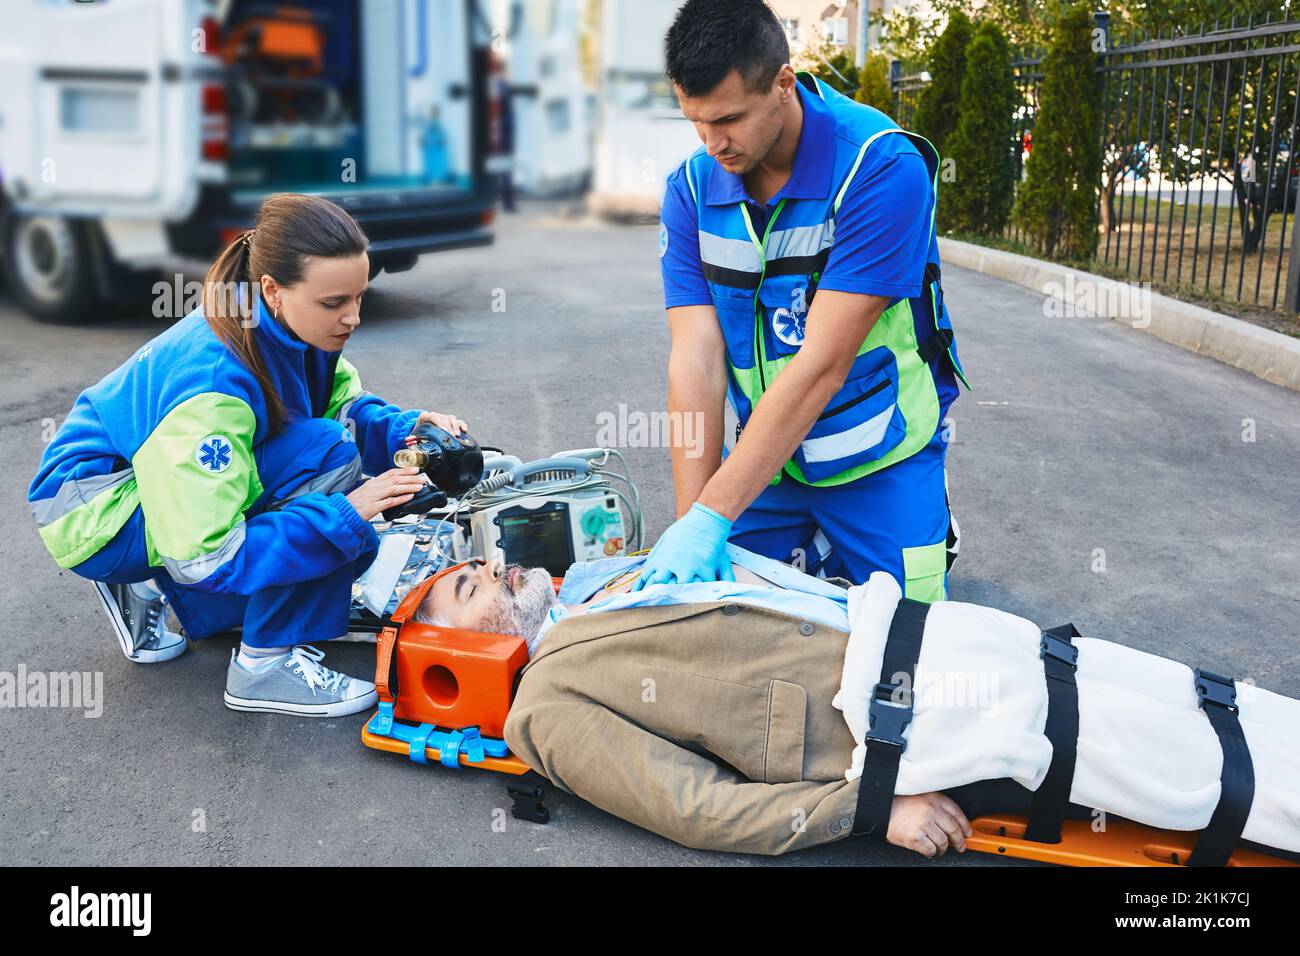 Rettungsassistenten, die Herzmassagen und künstliche Beatmung für verletzten erwachsenen Mann durchführen, der bewusstlos auf einer medizinischen Bahre nea liegt Stockfoto